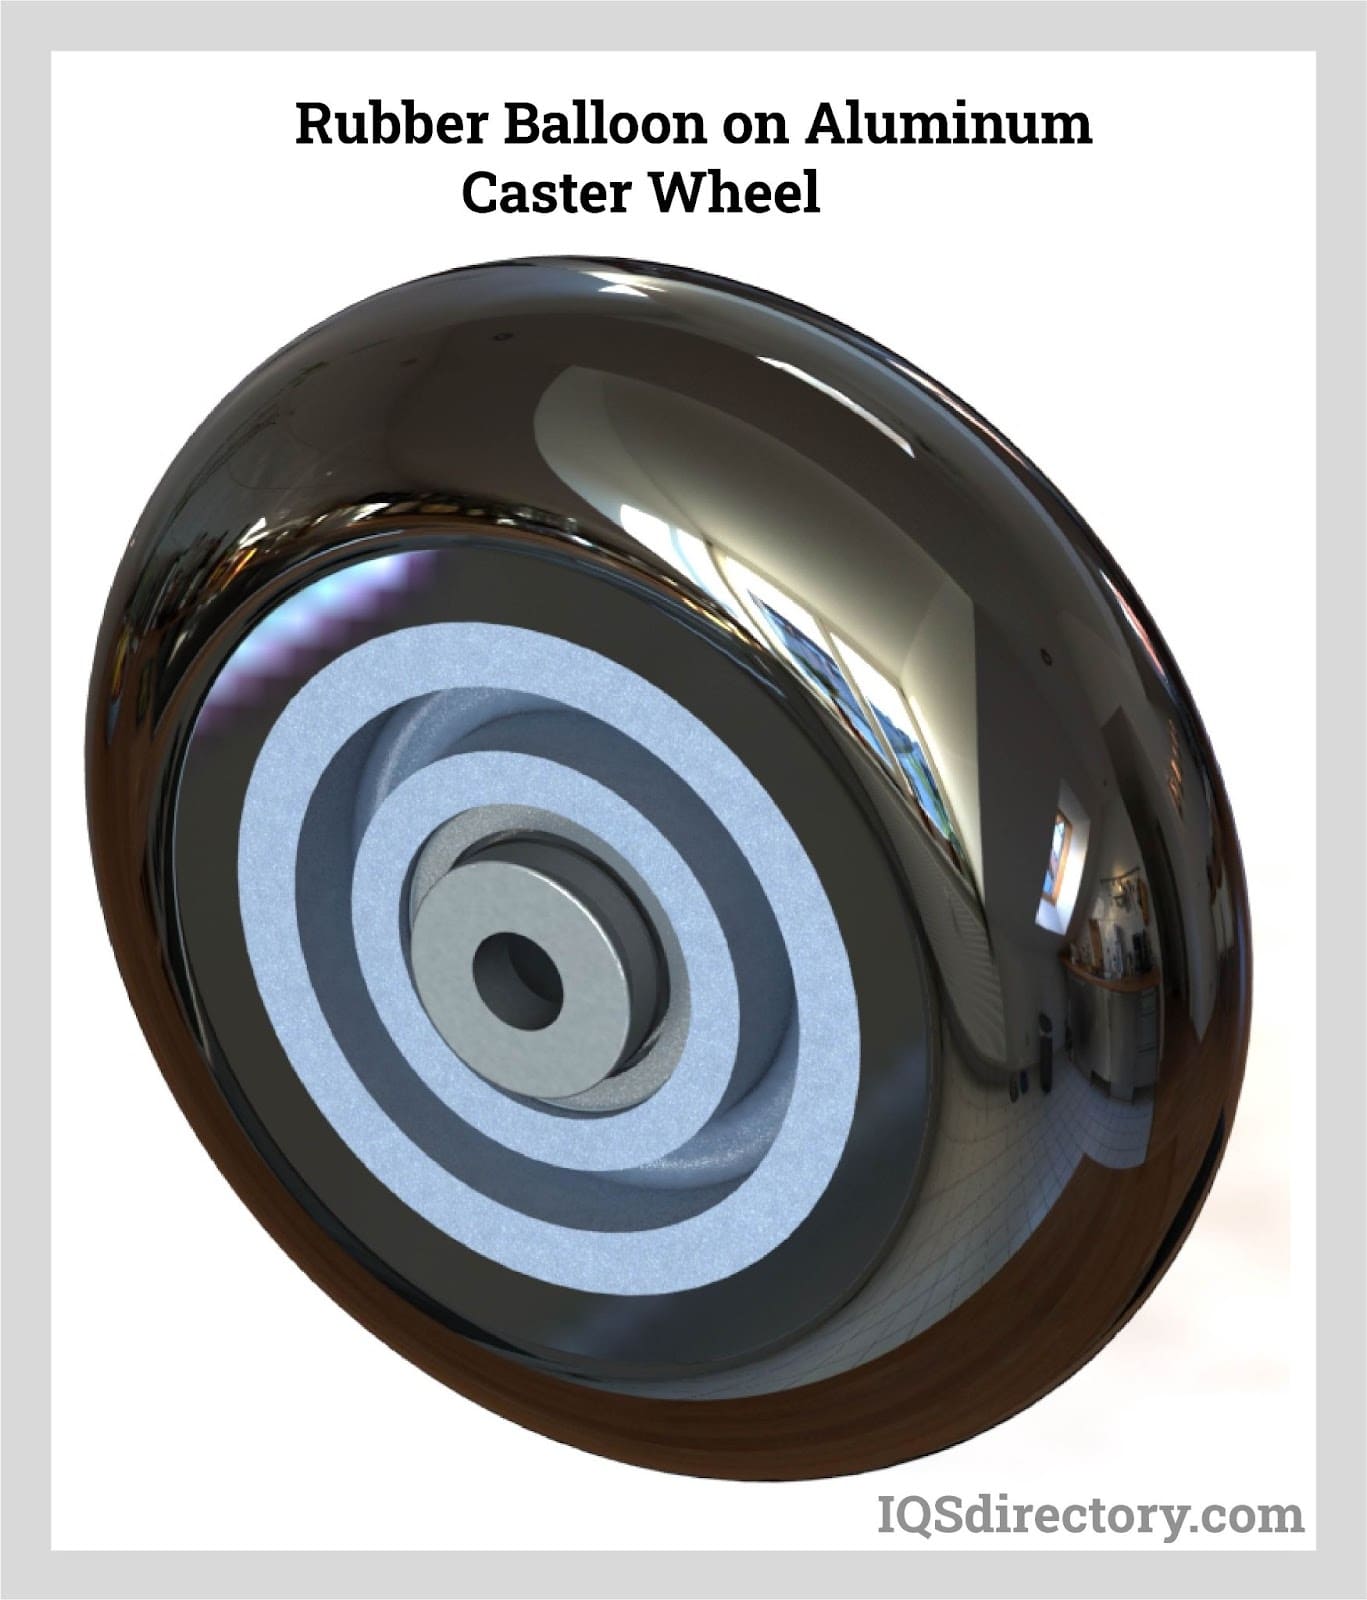 Rubber Balloon on Aluminum Caster Wheel